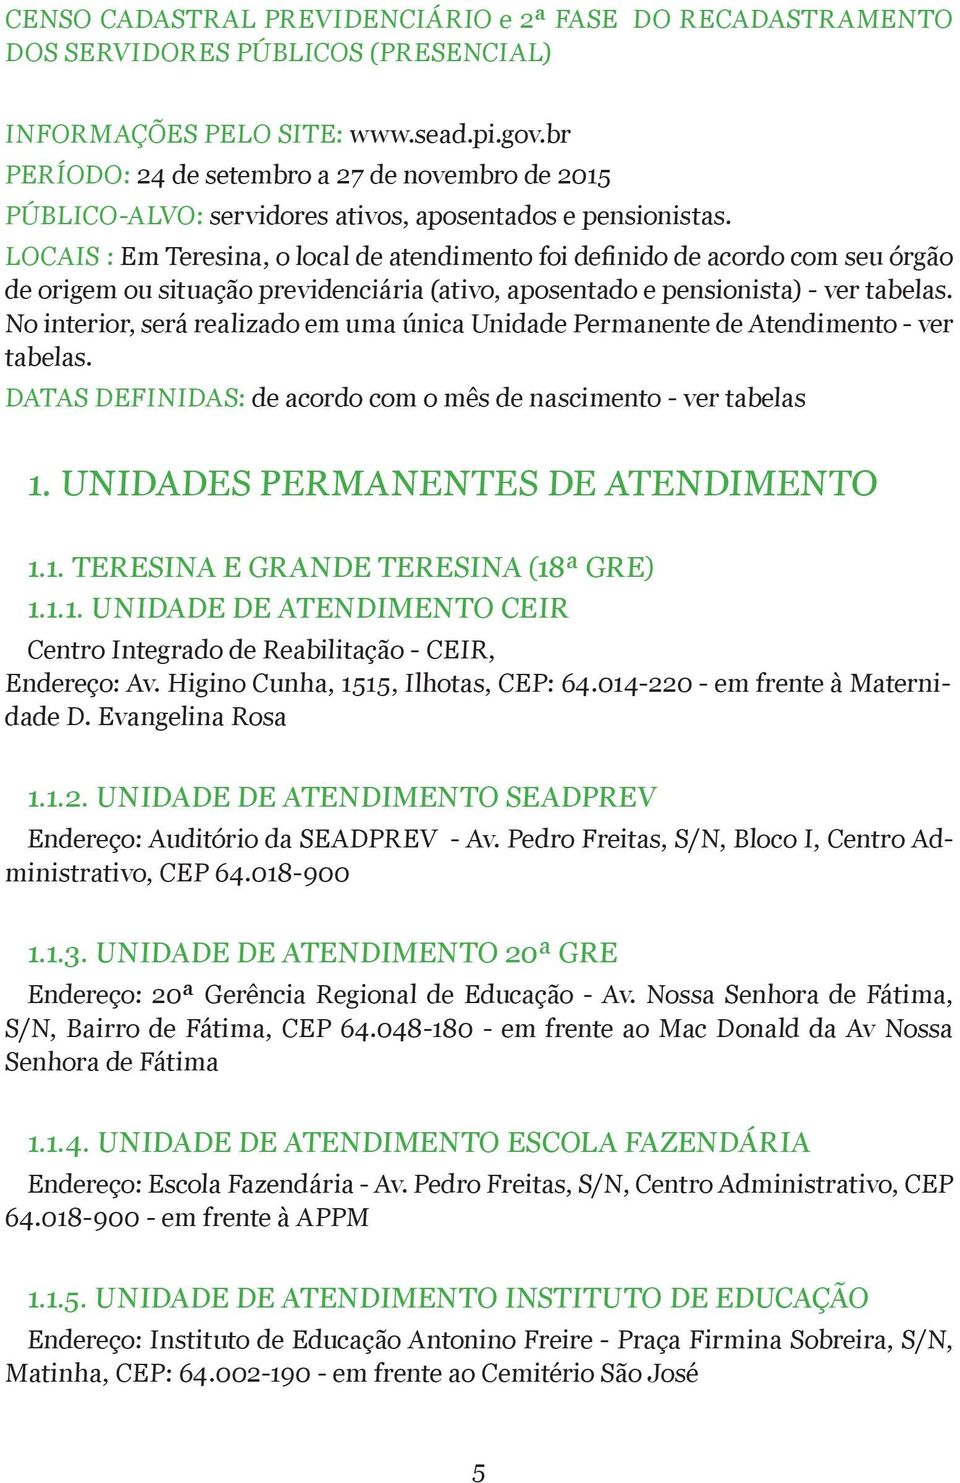 LOCAIS : Em Teresina, o local de atendimento foi definido de acordo com seu órgão de origem ou situação previdenciária (ativo, aposentado e pensionista) - ver tabelas.